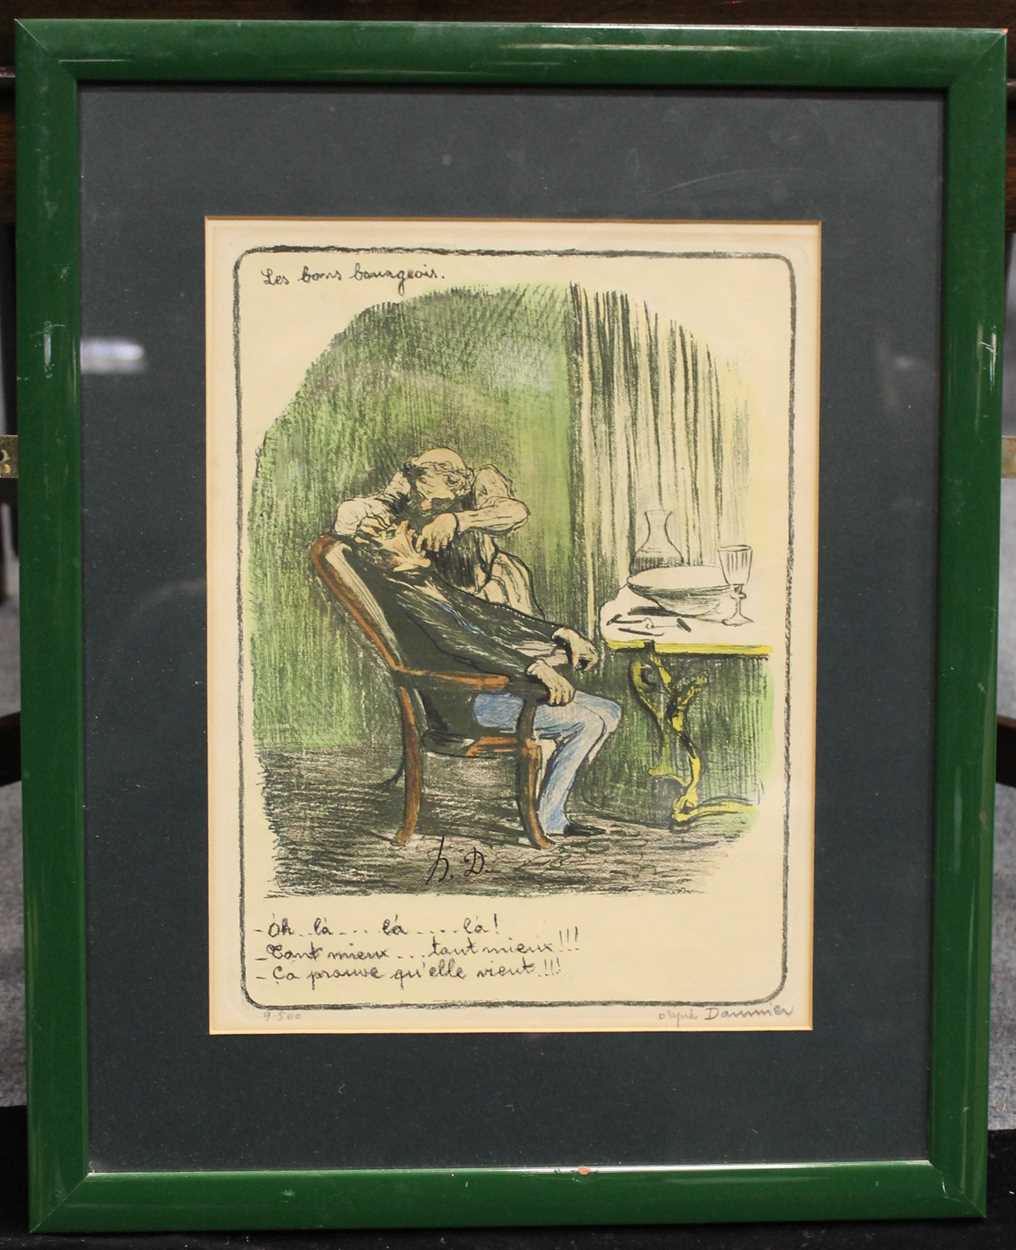 After Honore Daumier (French 1808-1879), Oh! la... tant mieux... ça prouve qu'elle vient!,